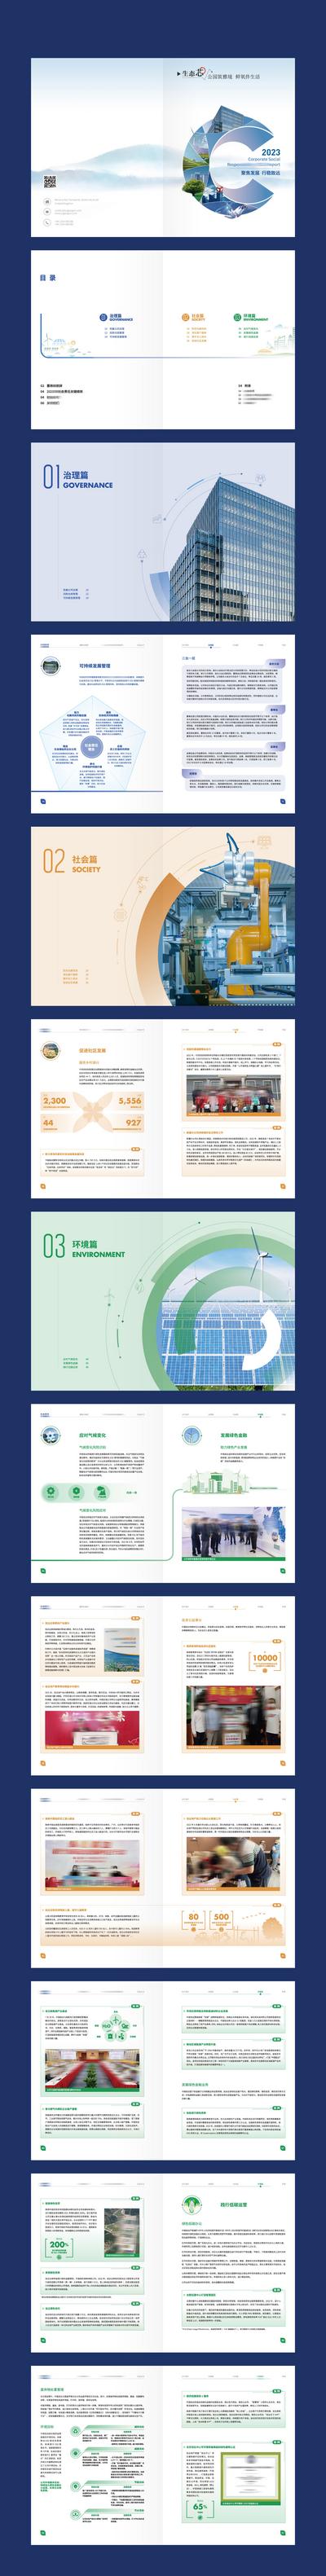 南门网 画册 宣传册 地产 科技 电力 新能源 生态 环保 节能 公司介绍 企业荣誉 数据 价值点 简约